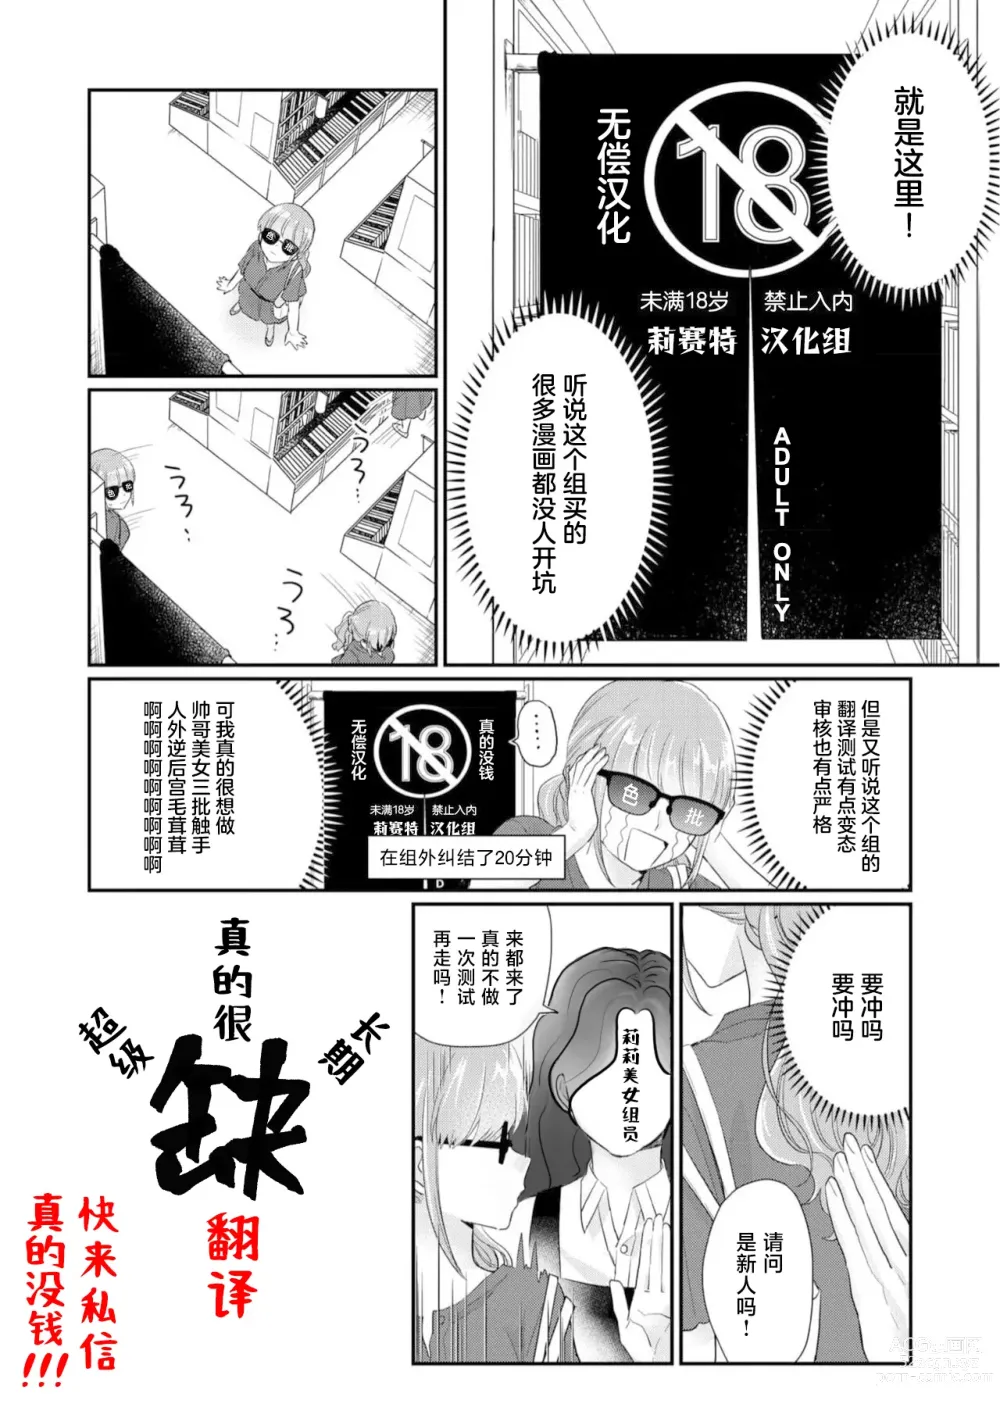 Page 10 of manga 不良少女与委员长关系不好全是演戏